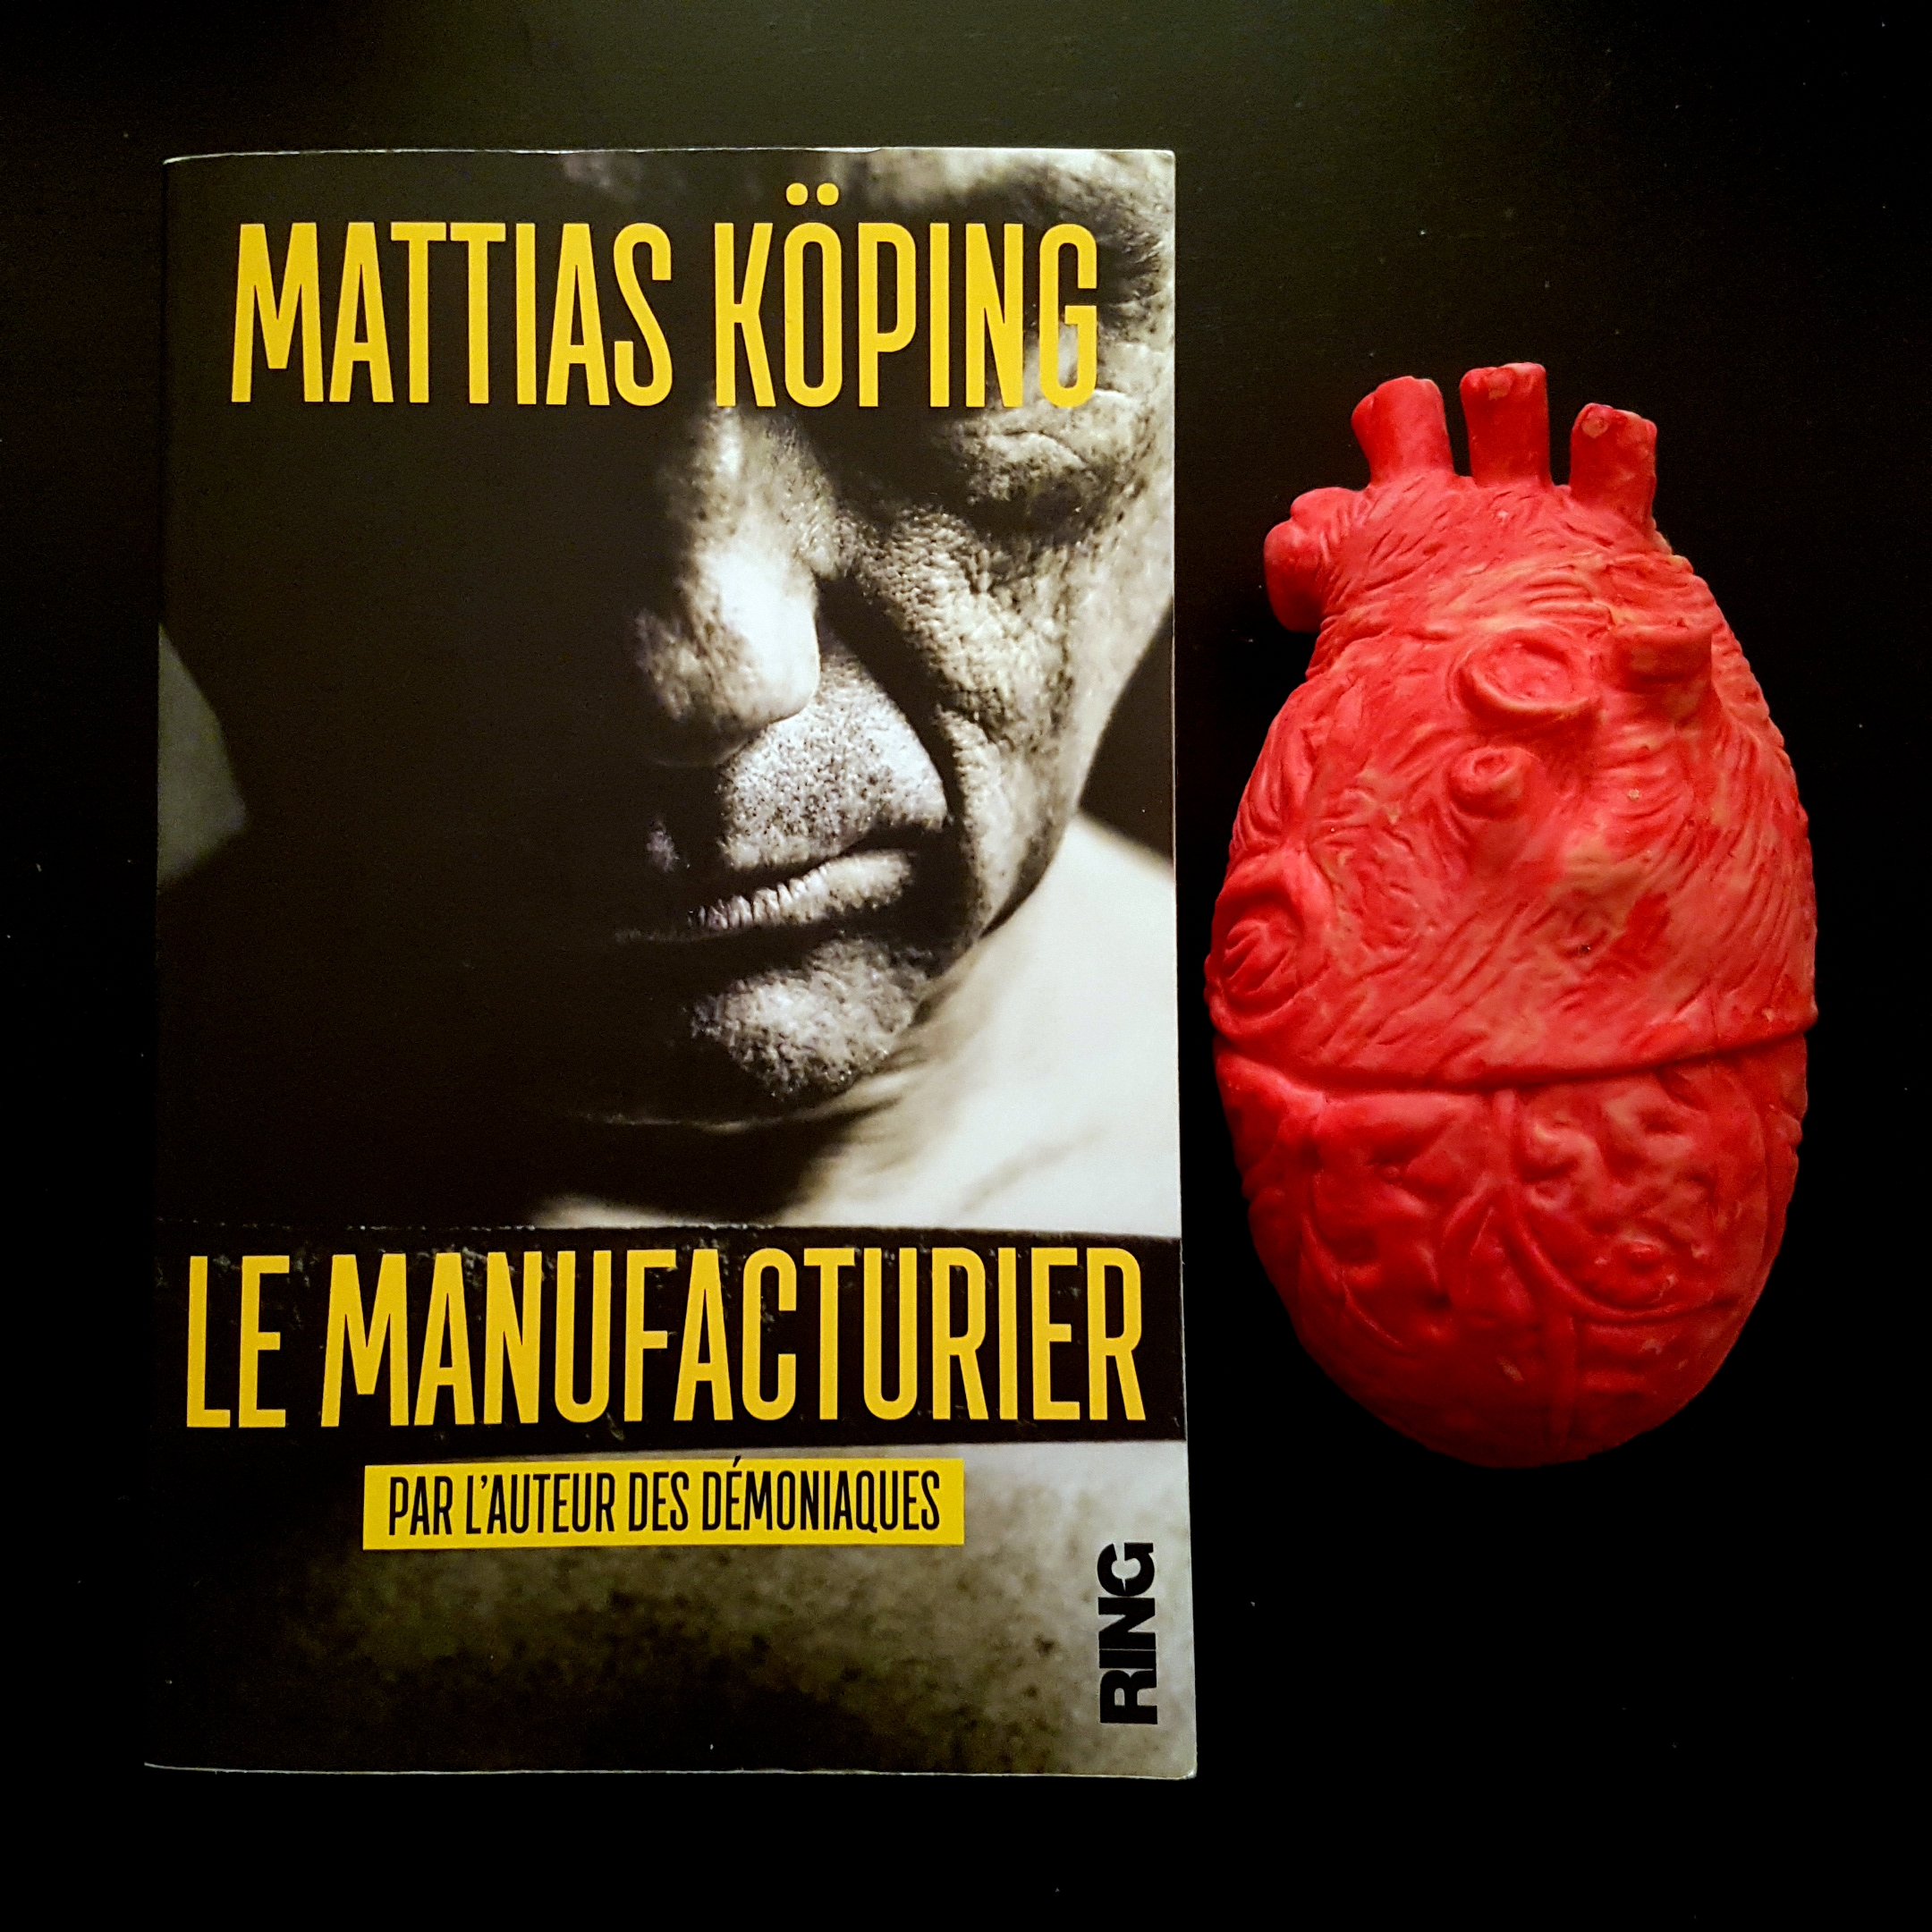 Le Manufacturier de Mattias Köping